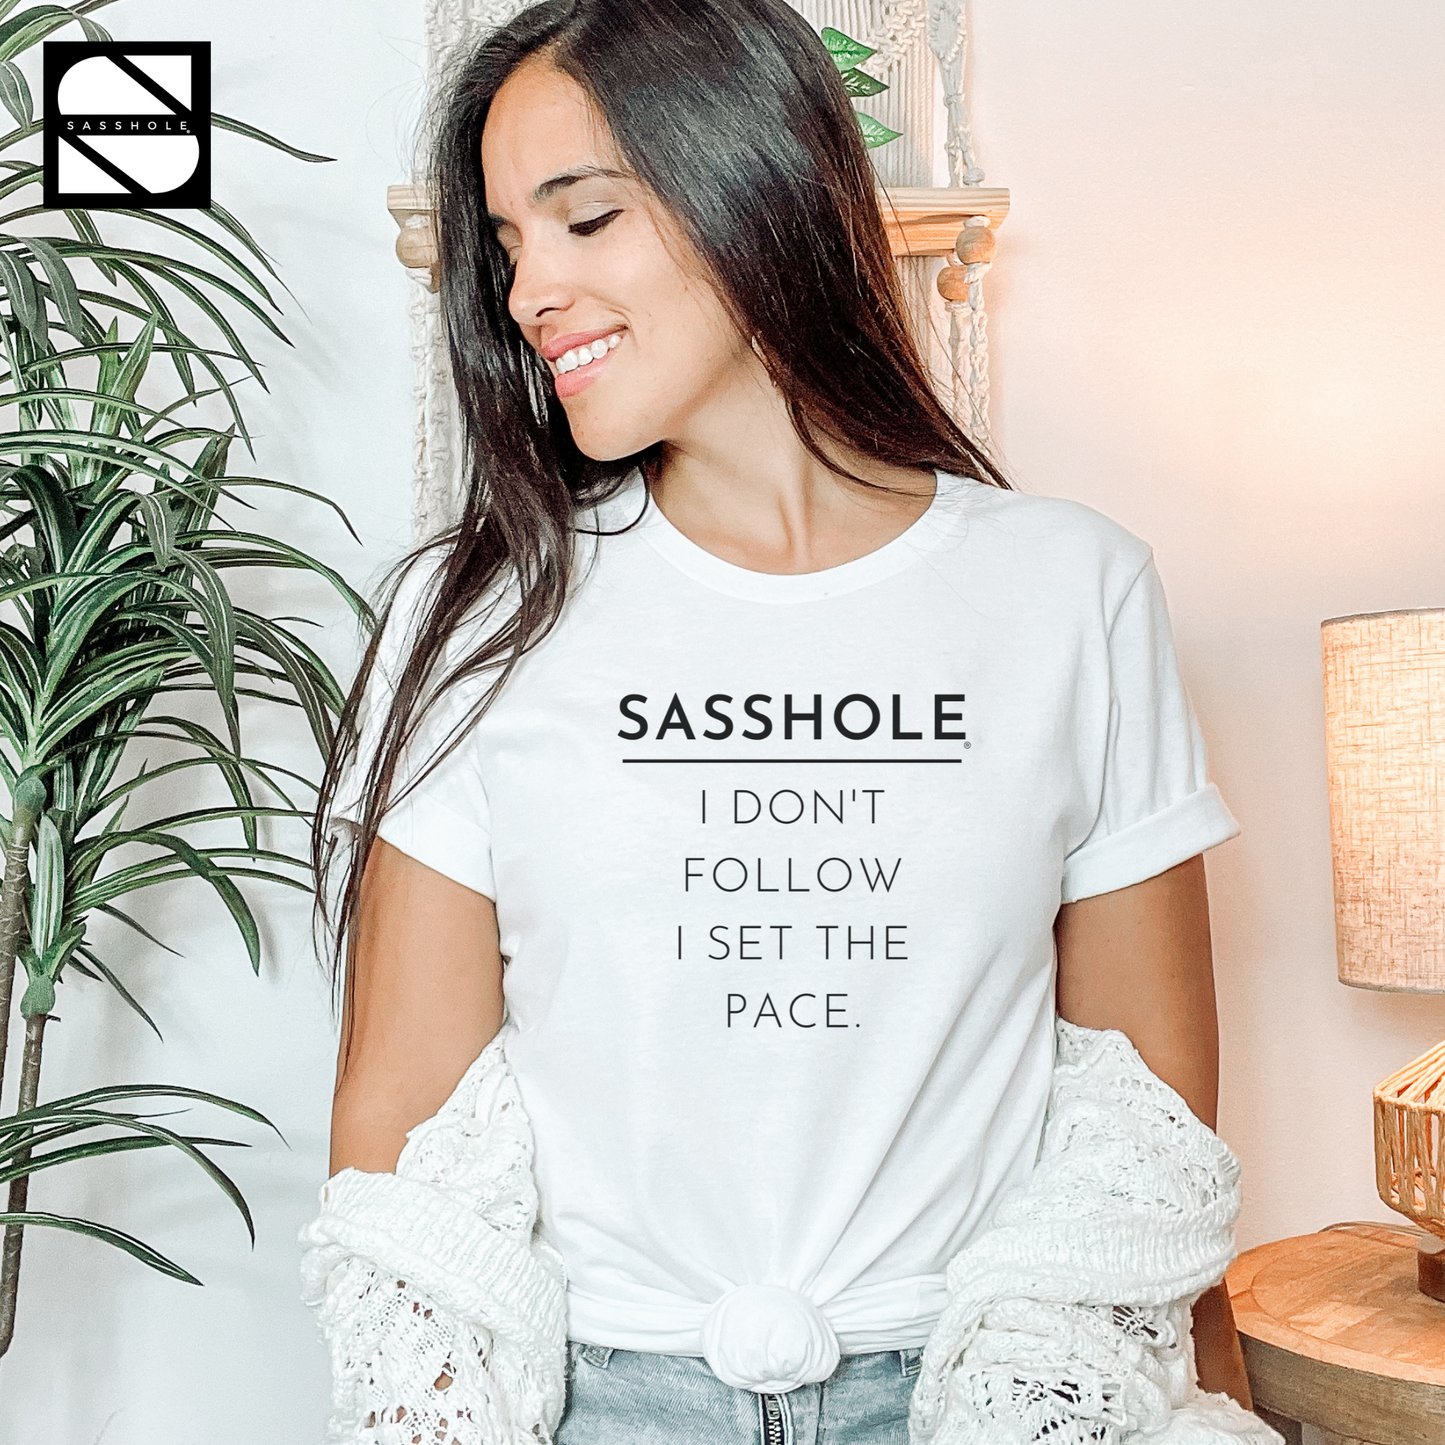 Sasshole® - I Don't Follow, I Set The Pace Unisex Crewneck Short Sleeve T-shirt